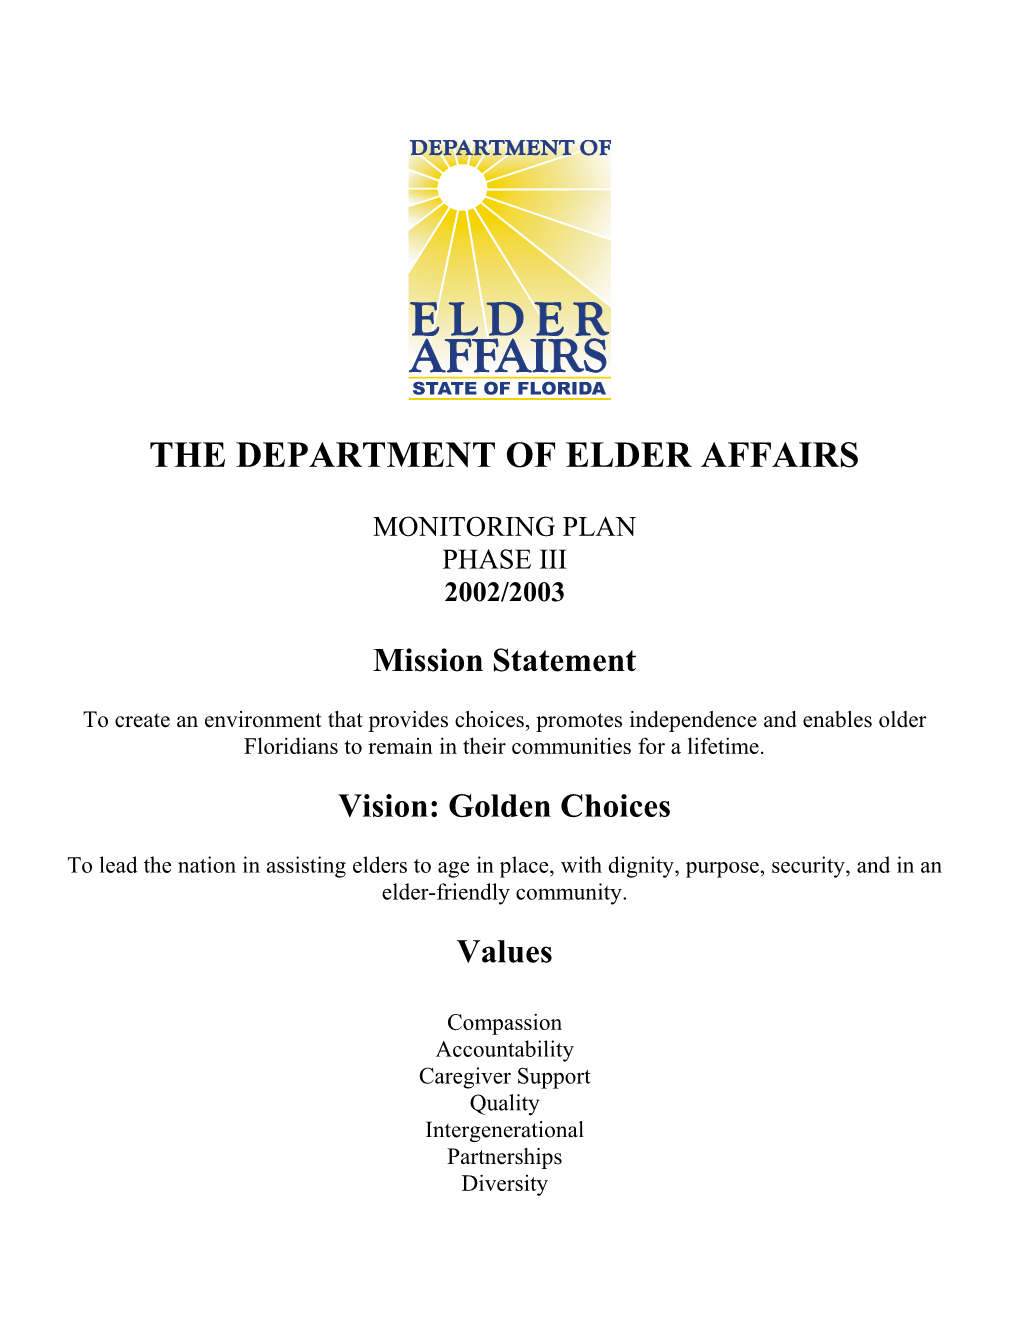 The Department of Elder Affairs